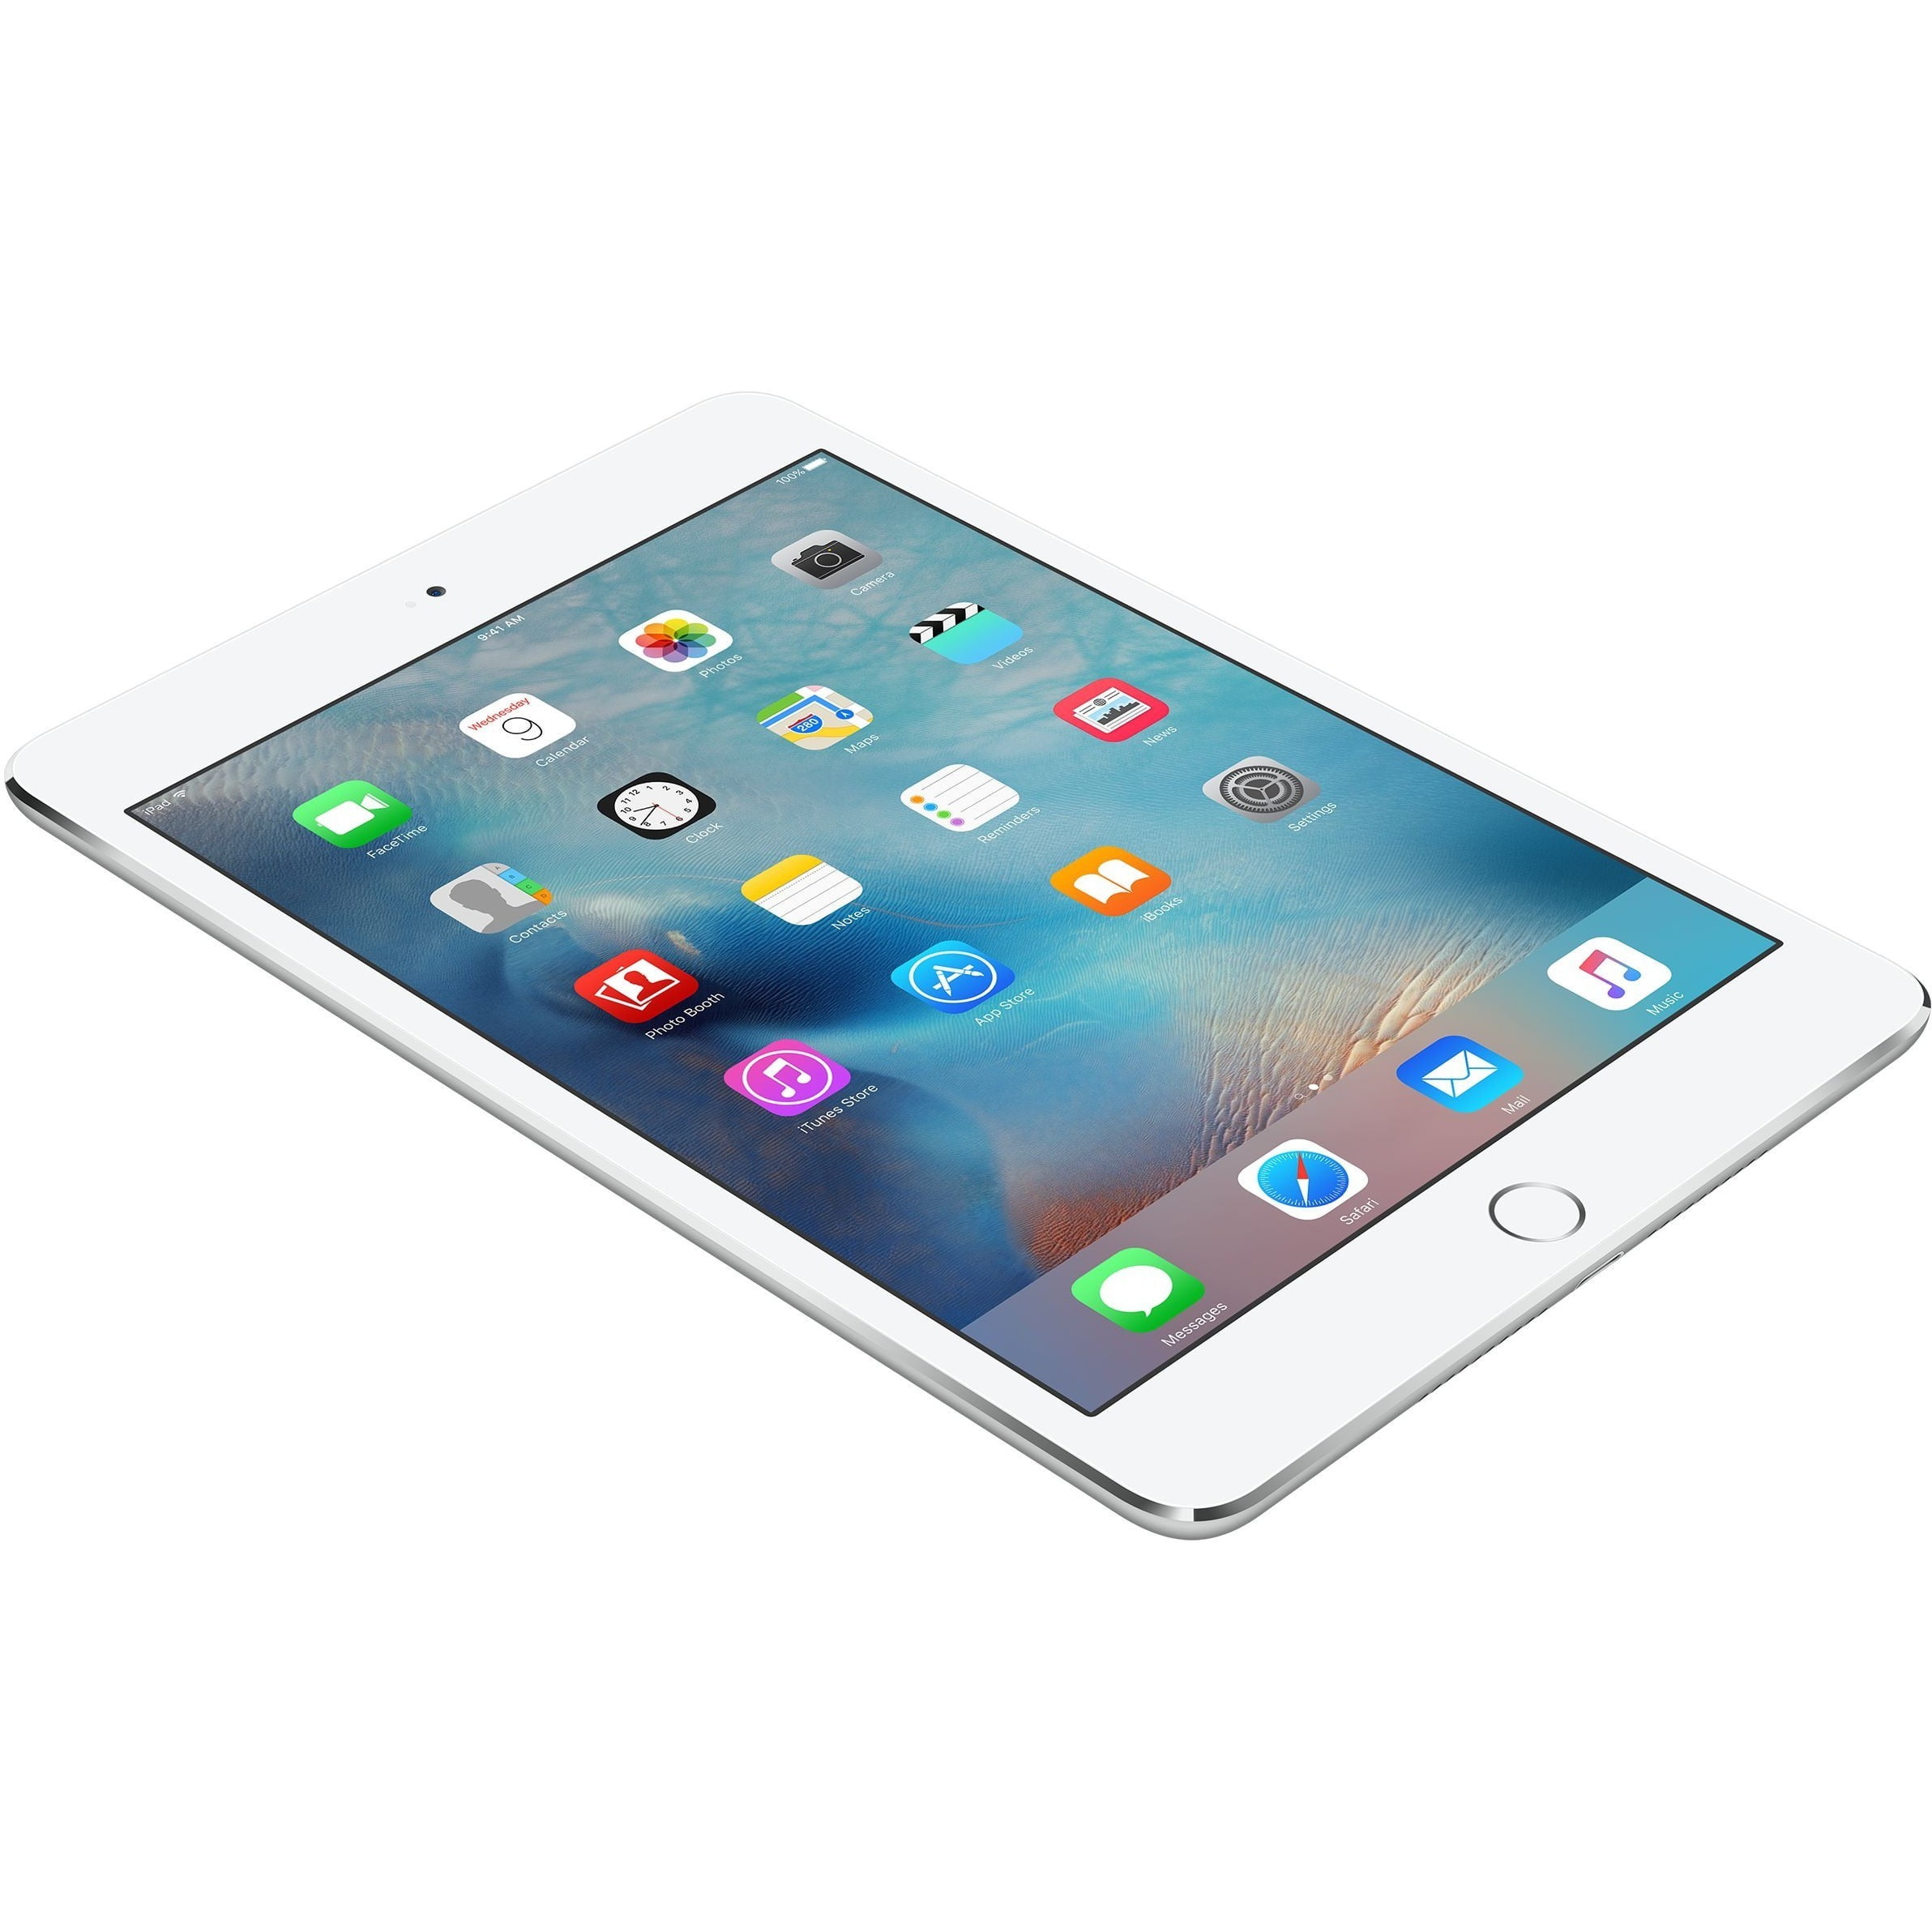 Apple Ipad Mini 4 32GB Wifi + Cellular Silver (Grade B Refurb 